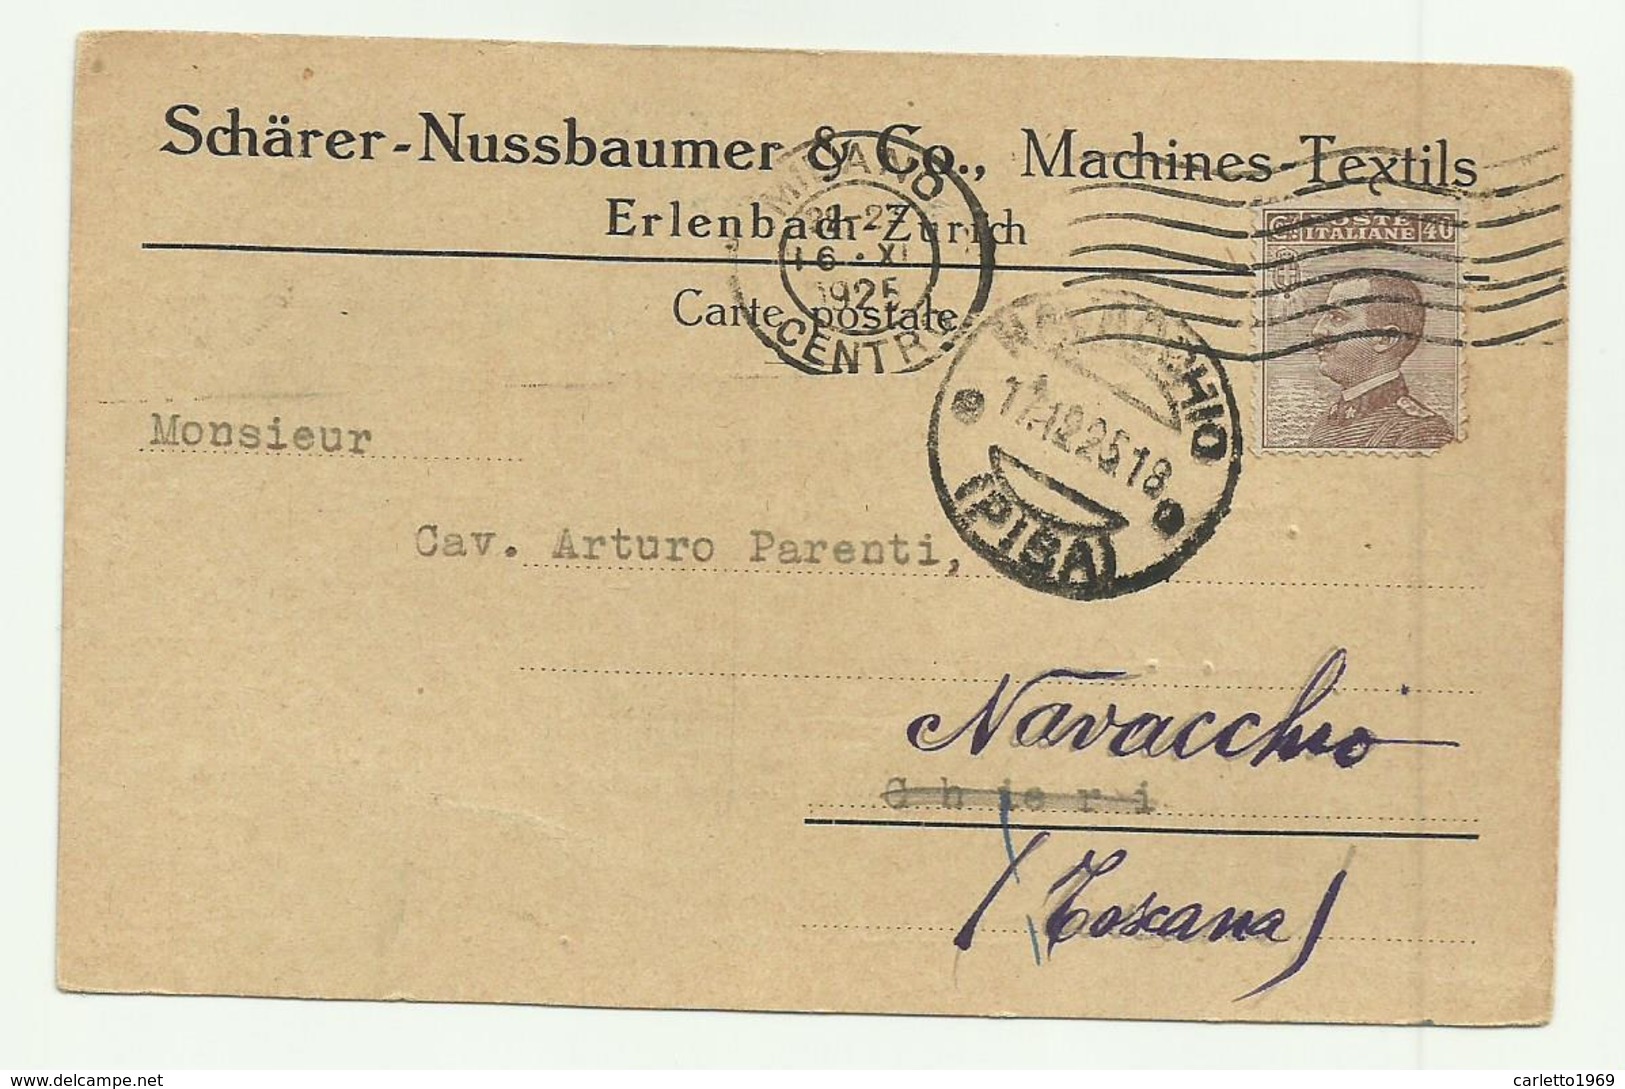 ERLENBACH - ZURICH - SCHARER - NUSSBAUMER & Co. MACHINES TEXTILS 1925 FP - Zürich